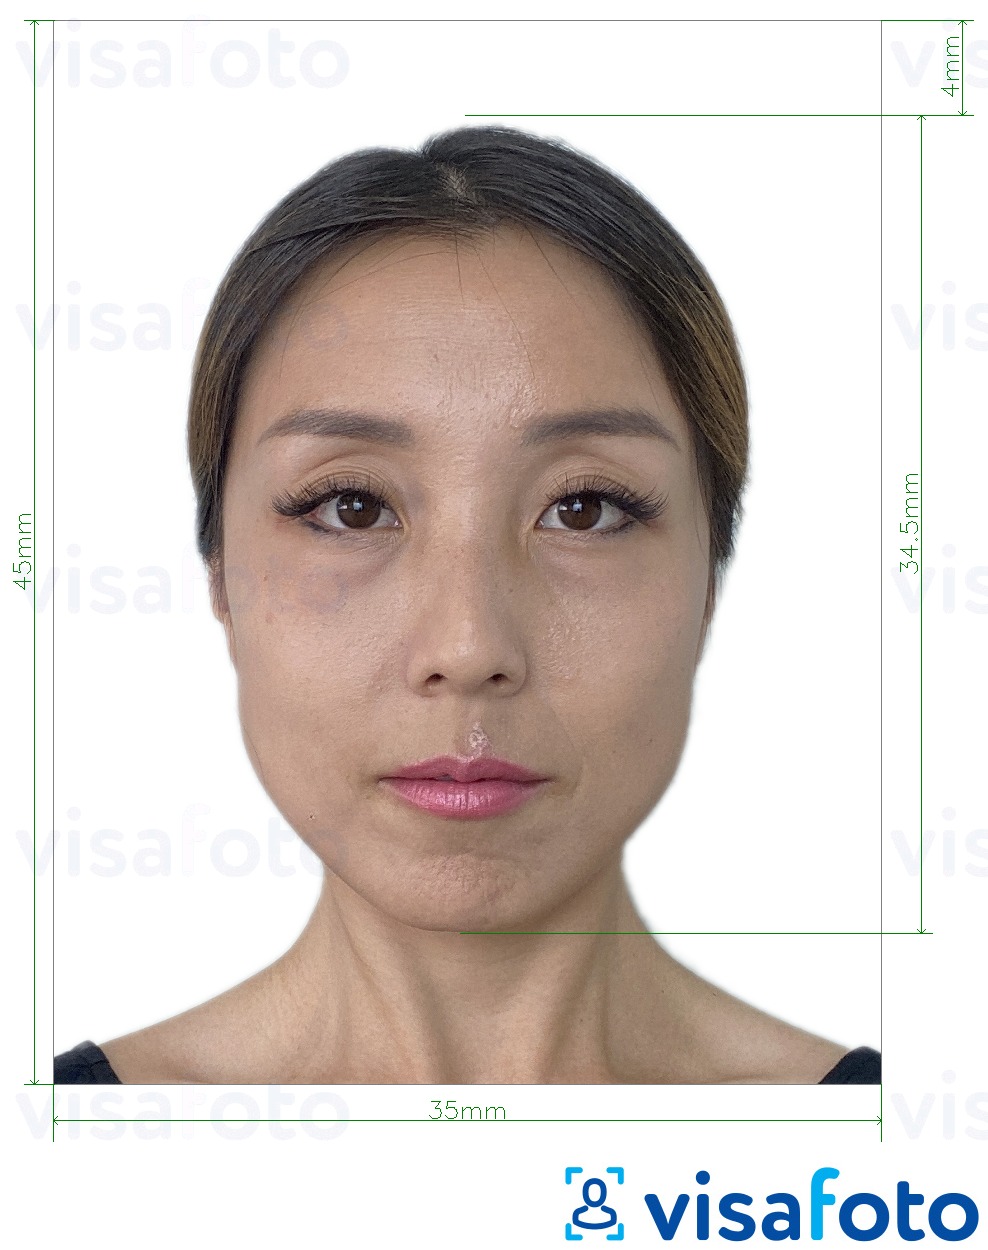 Eksempel bilde for Macau resident identitetskort (BIR) 45x35 mm med riktig størrelse